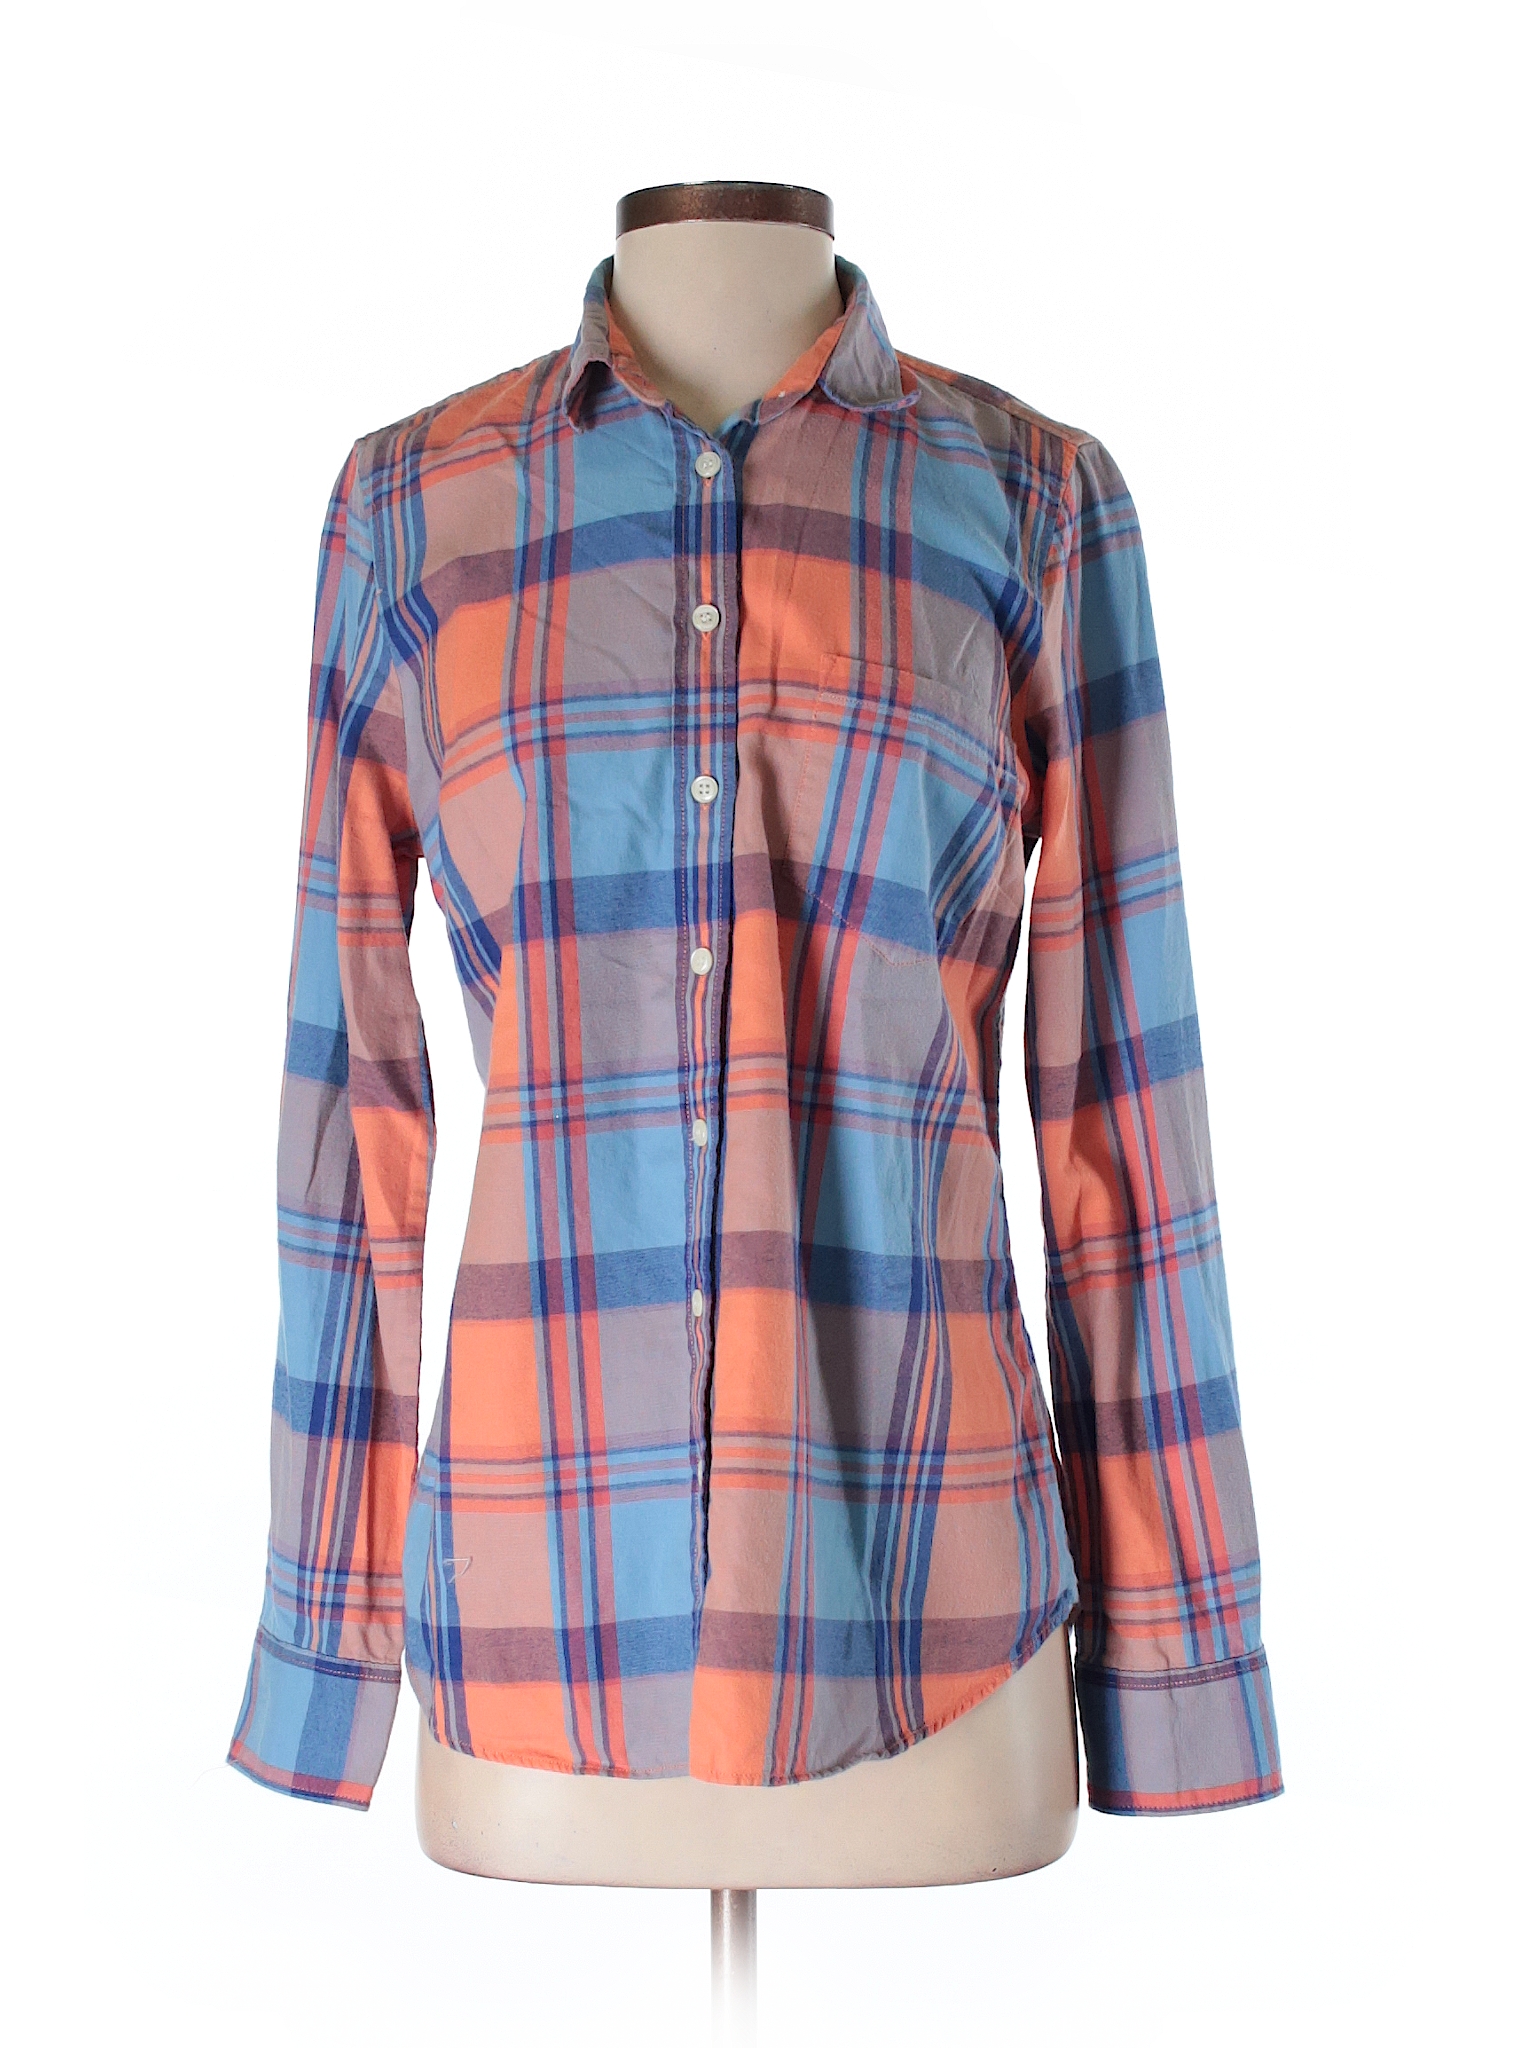 J. Crew 100% Cotton Plaid Orange Long Sleeve Button-Down Shirt Size S ...